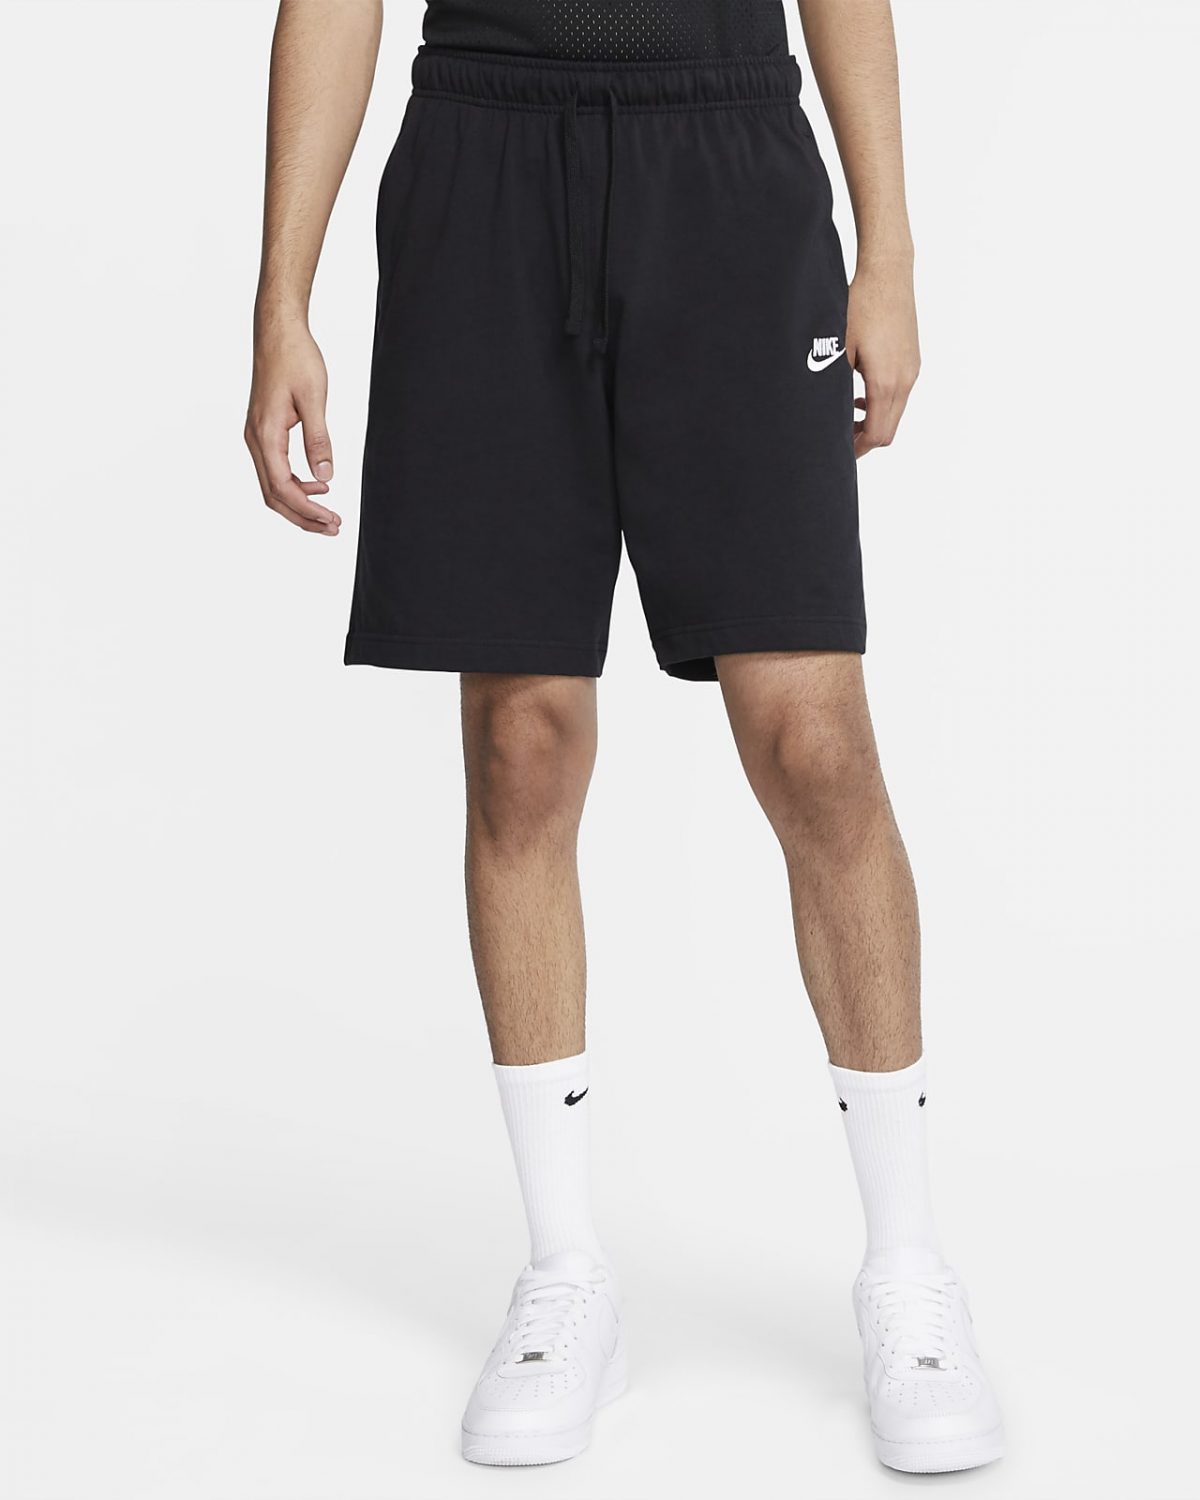 Мужские шорты Nike Sportswear Club фото